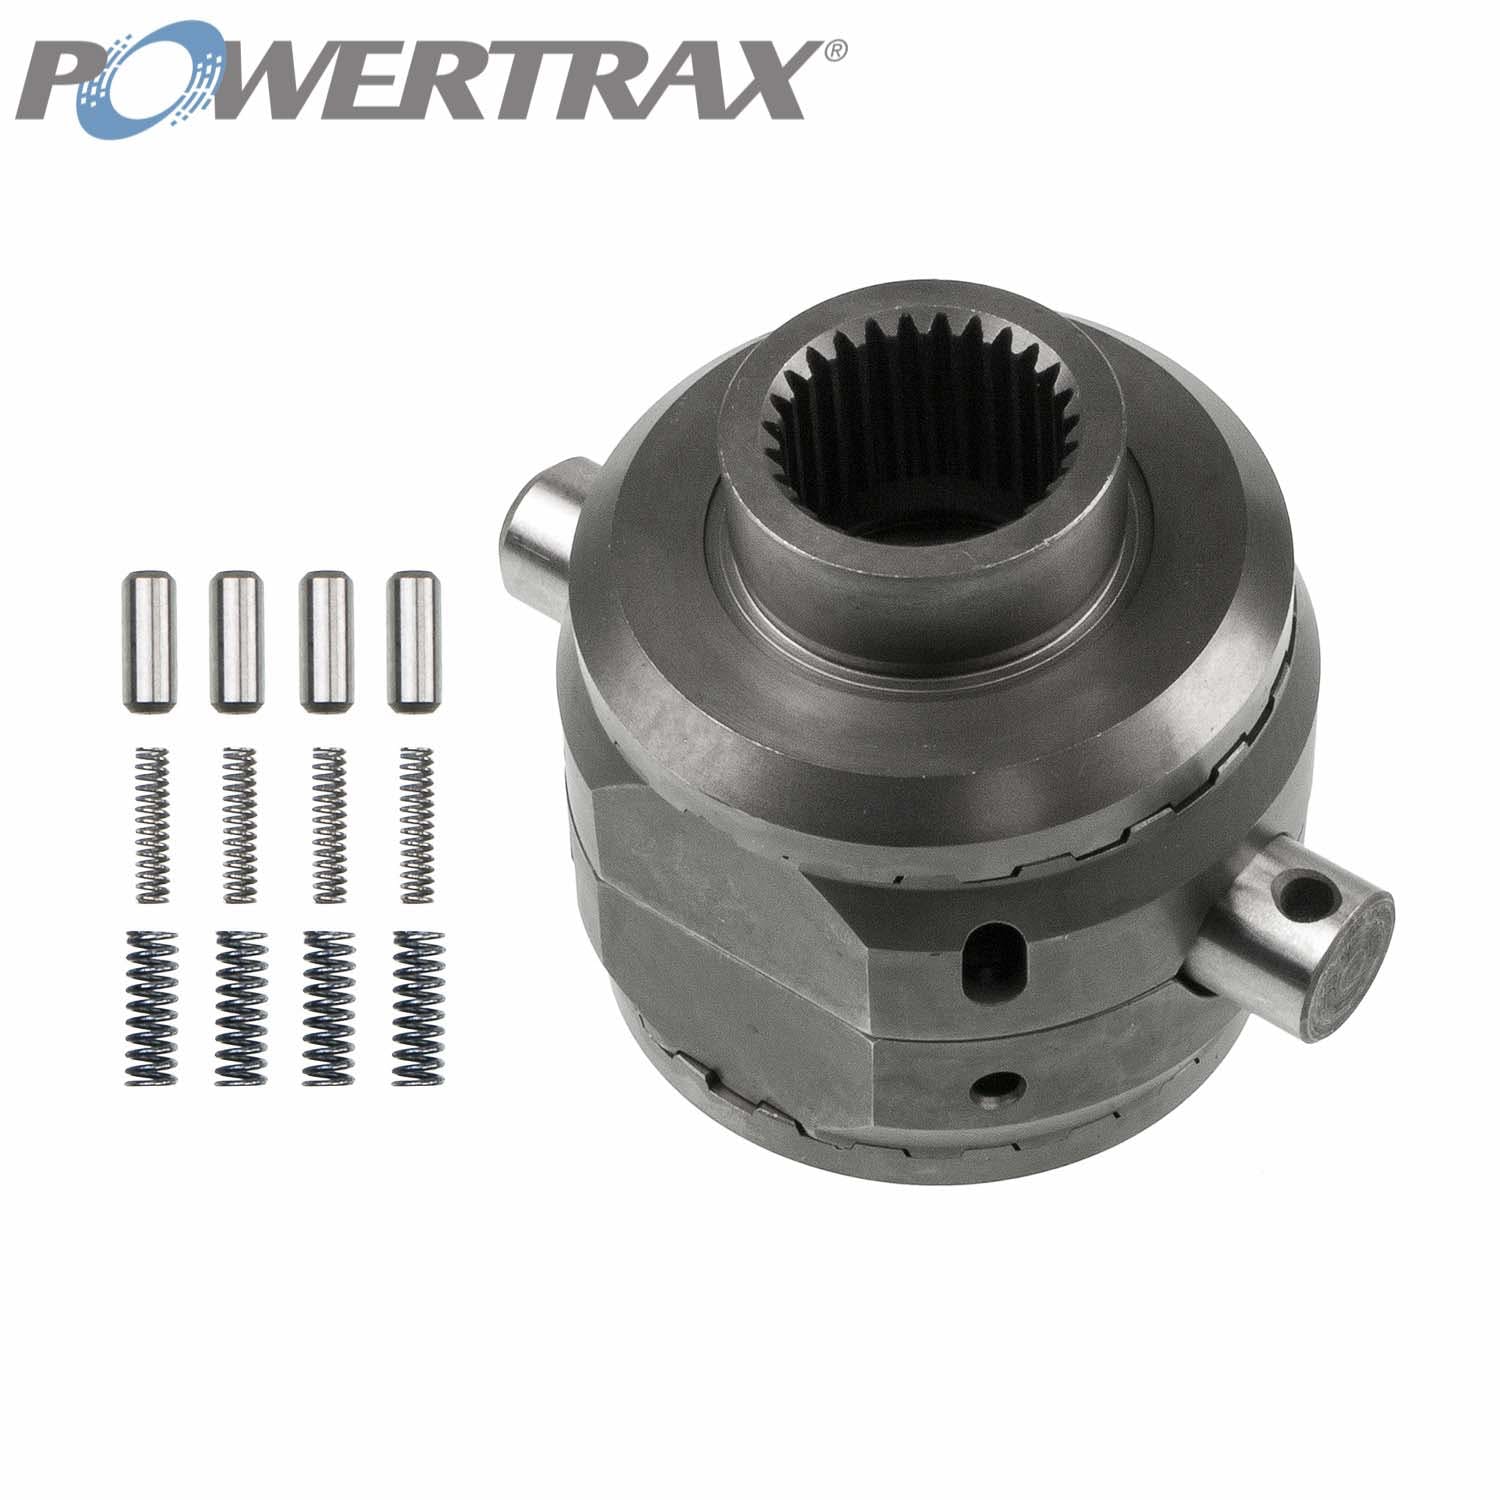 PowerTrax 2311-LR Lock Right Locker